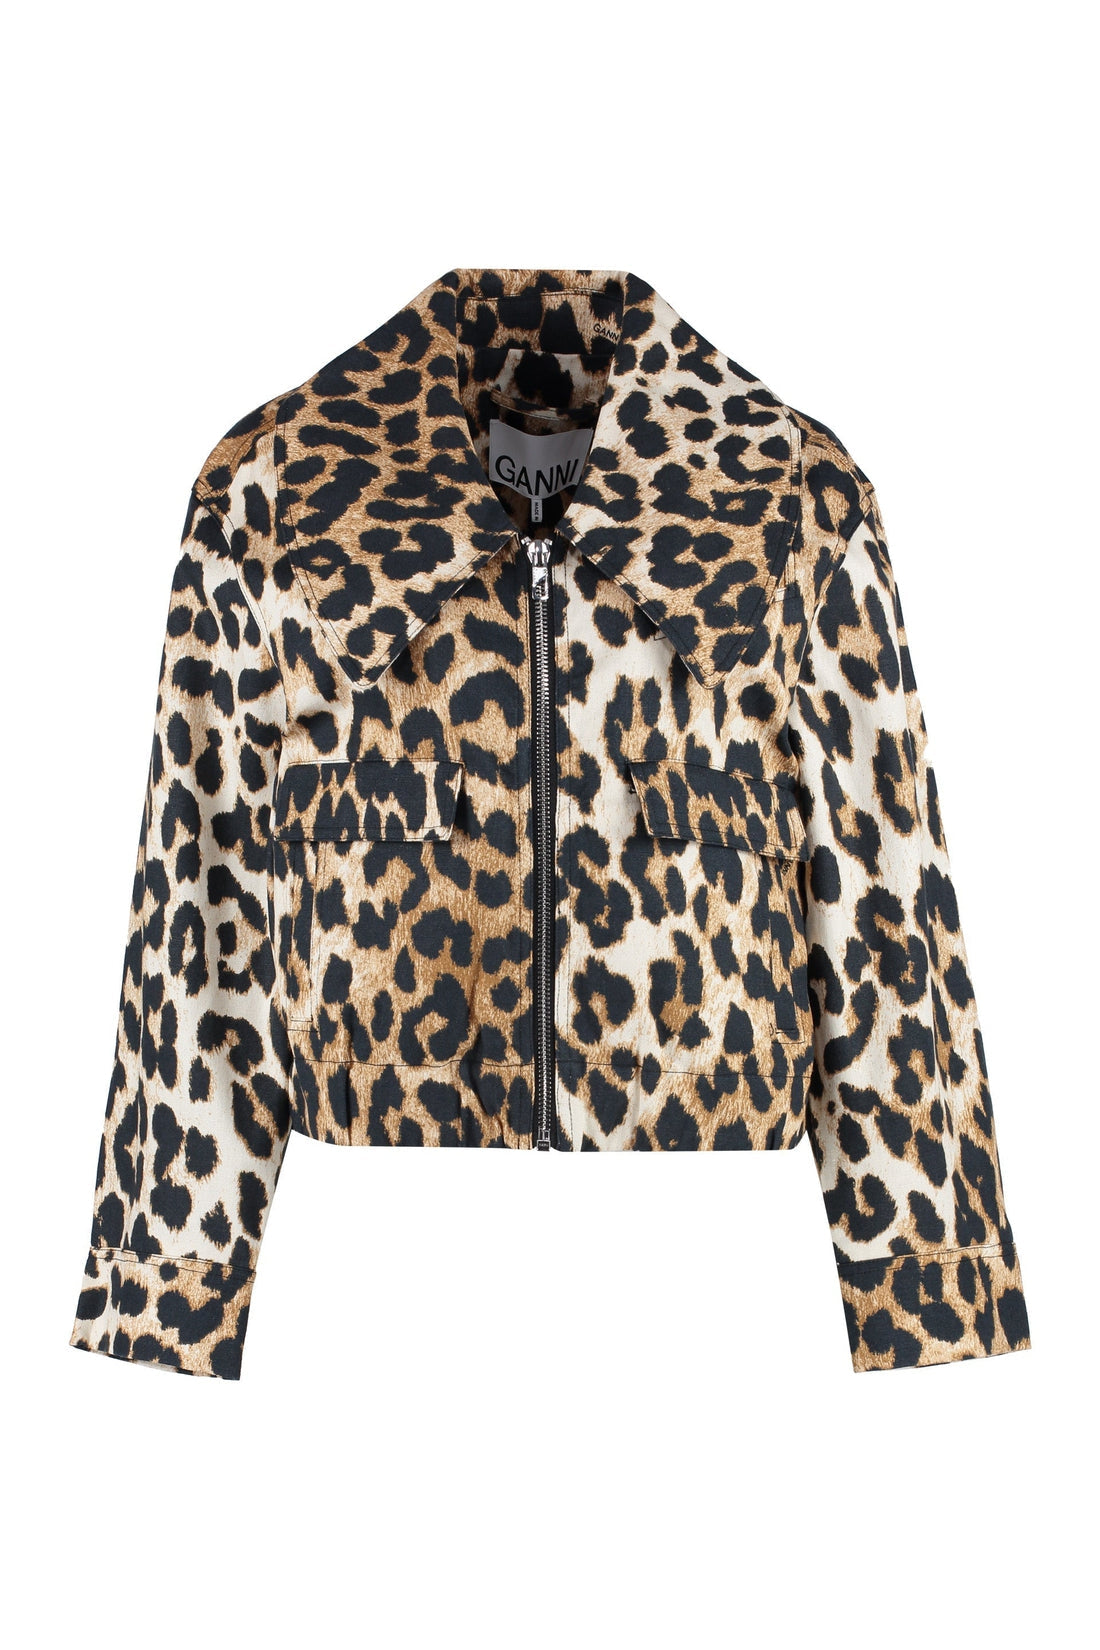 GANNI-OUTLET-SALE-Leopard print short jacket-ARCHIVIST